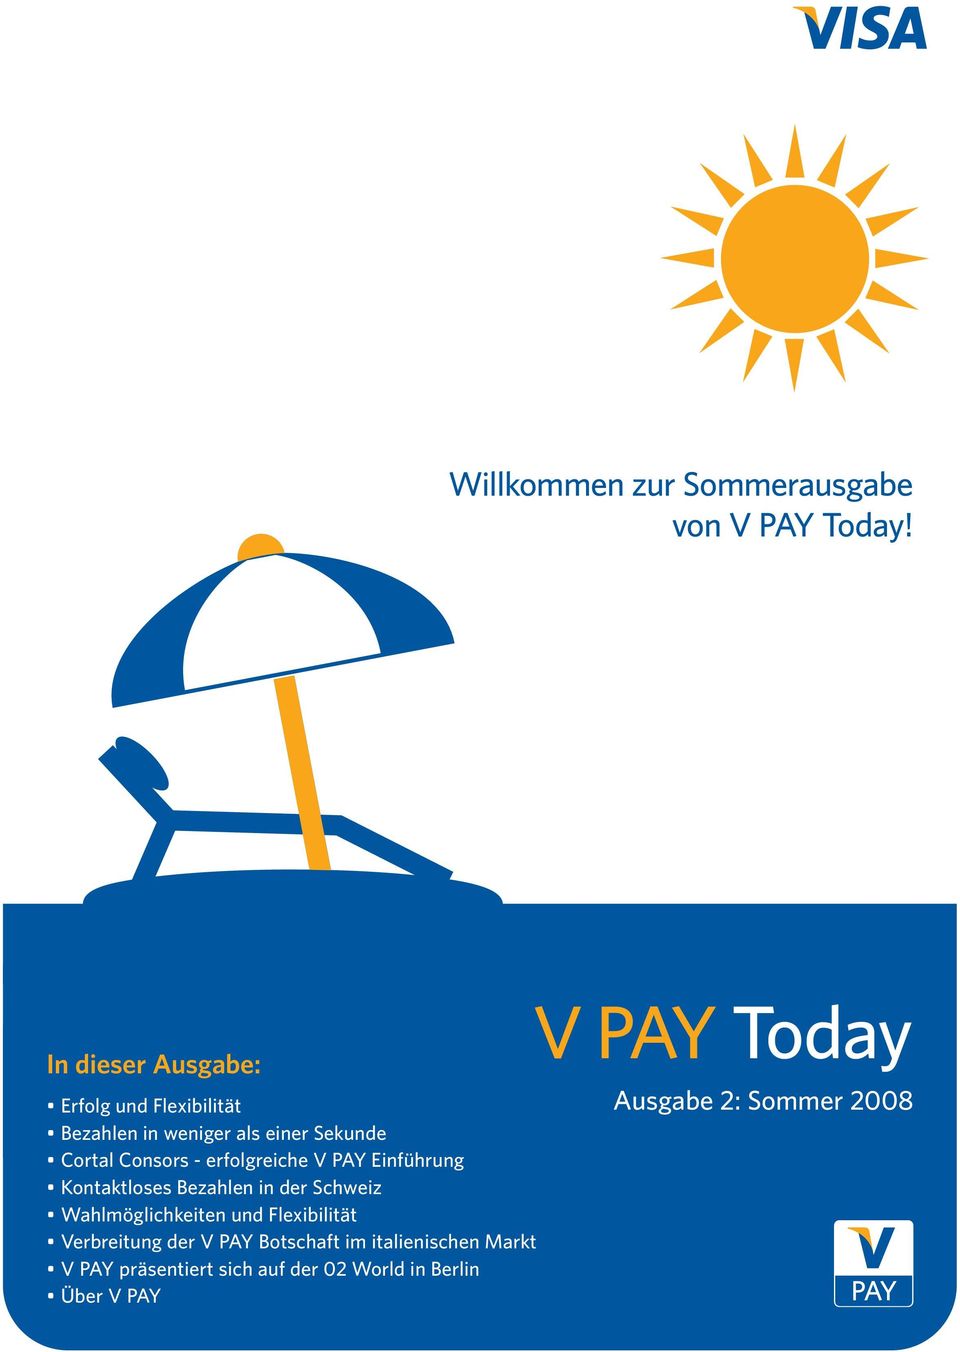 Consors - erfolgreiche V PAY Einführung Kontaktloses Bezahlen in der Schweiz